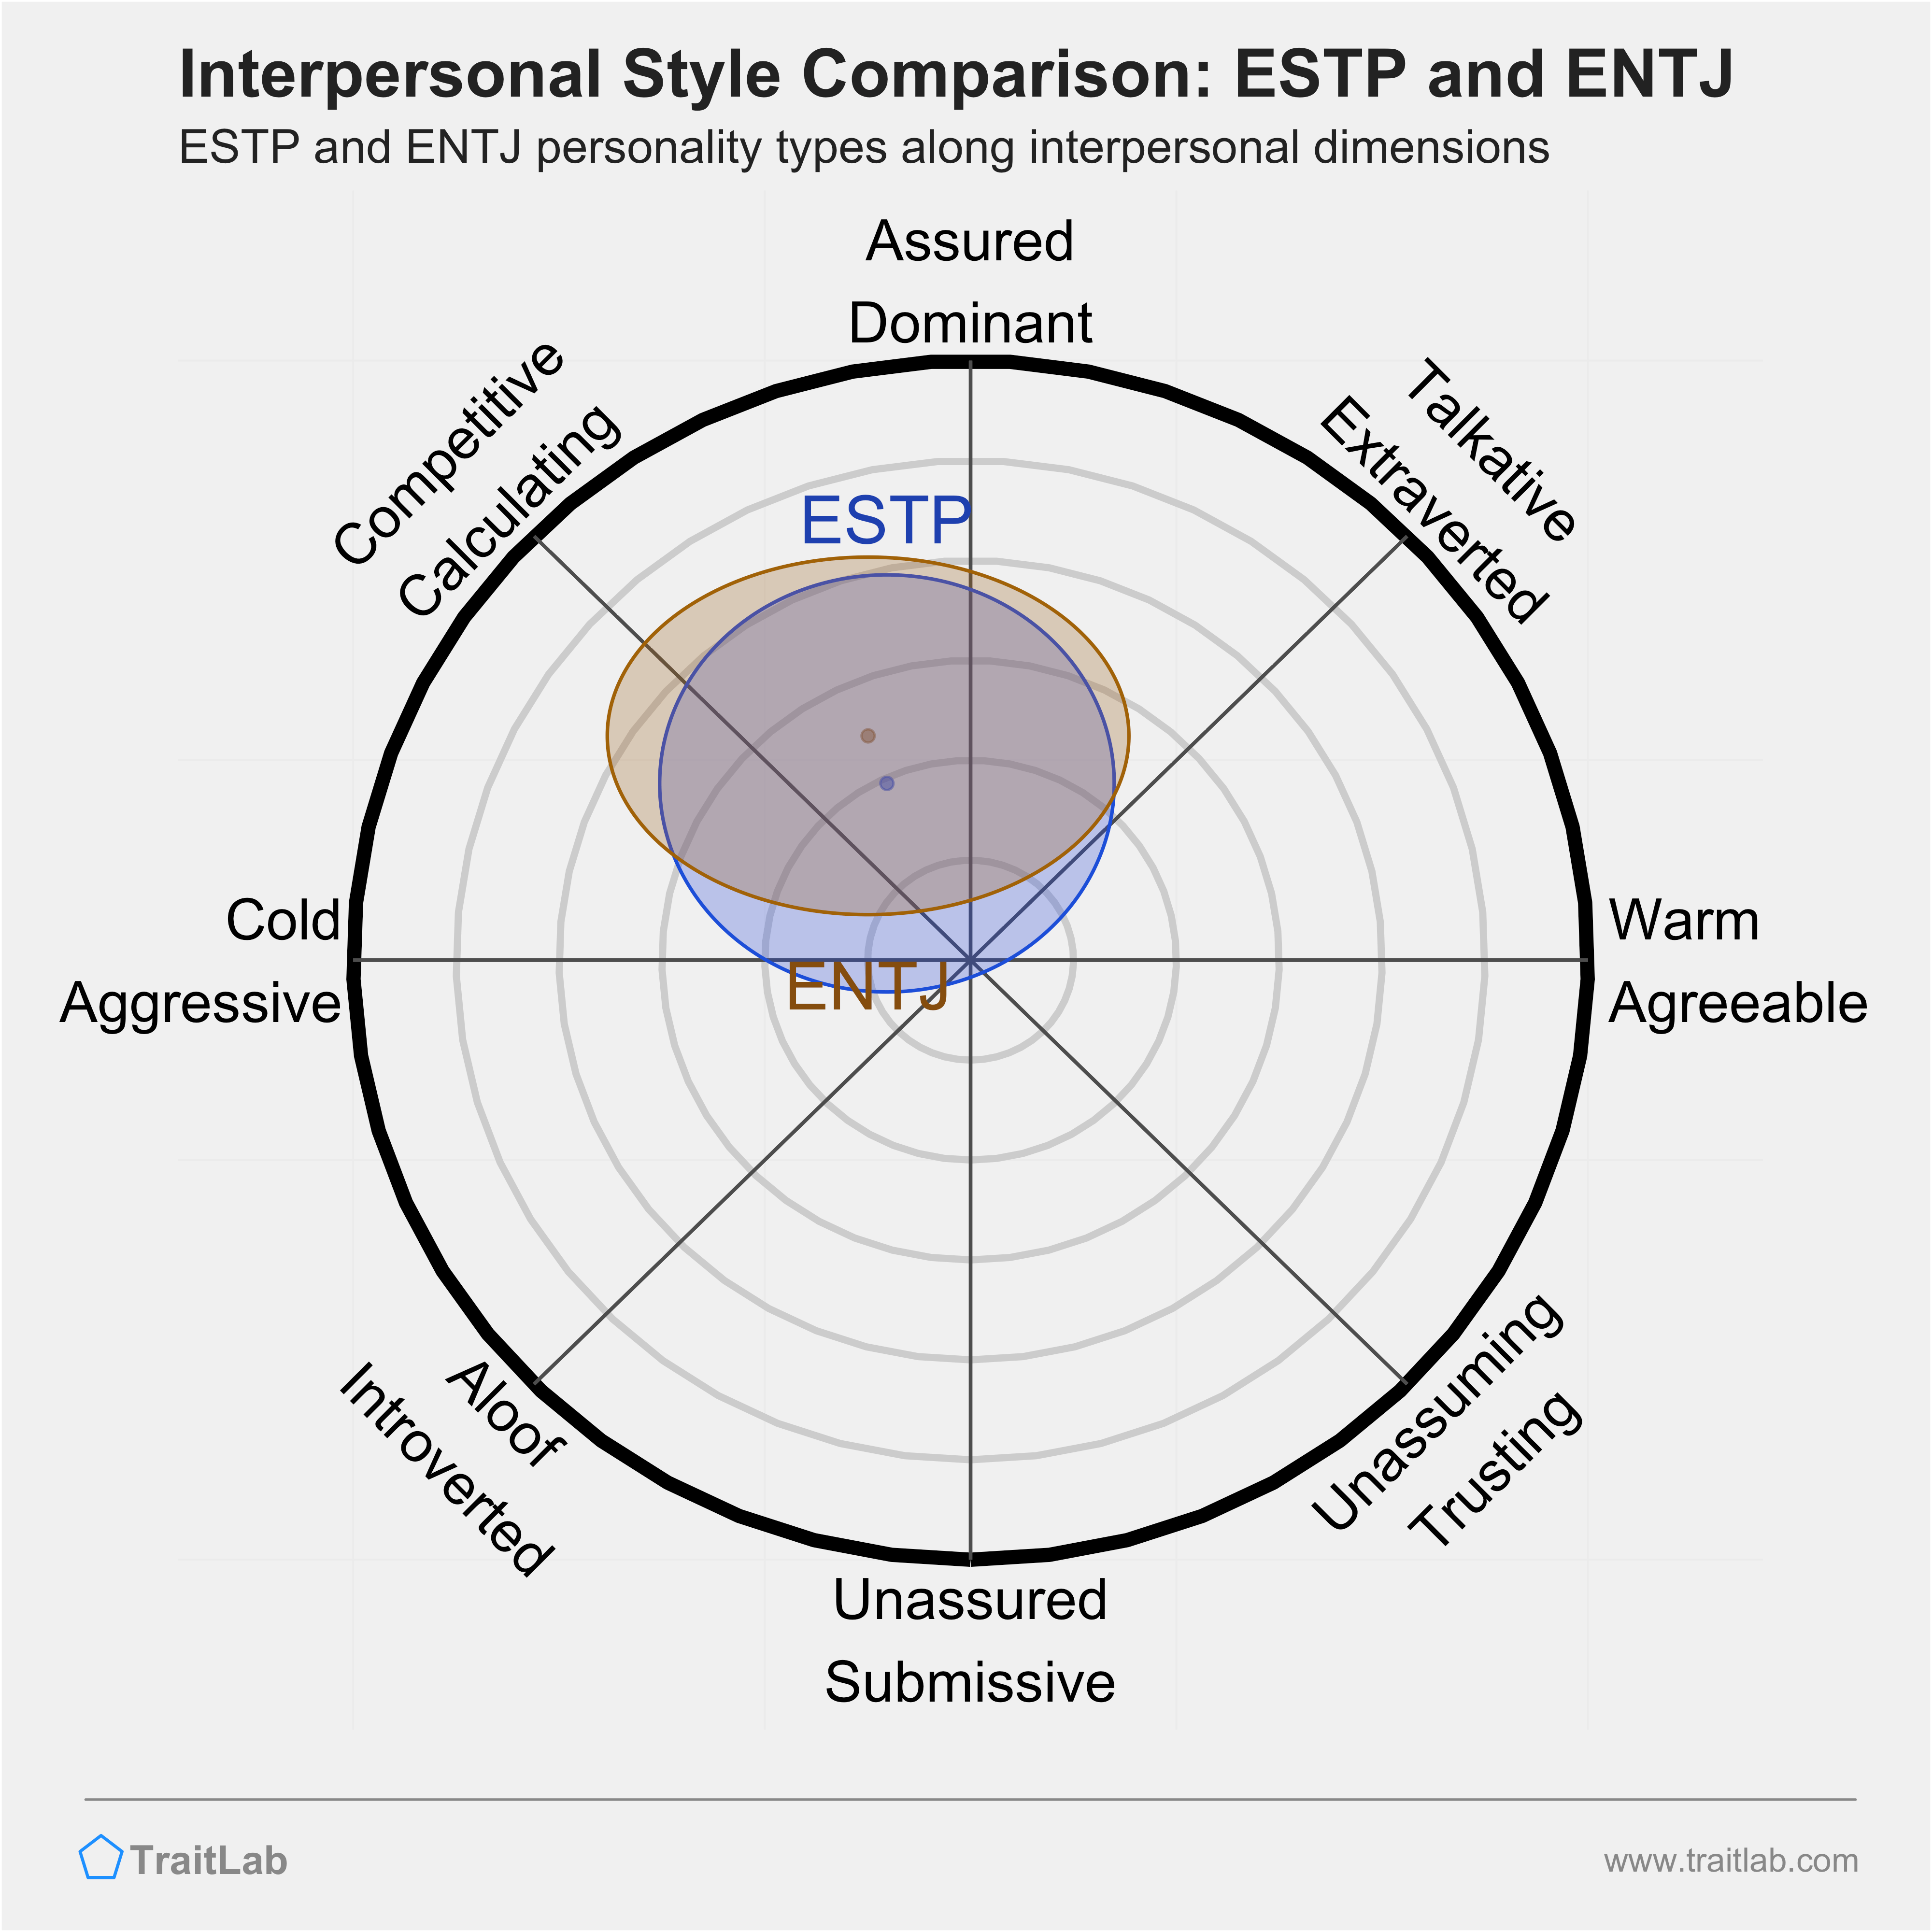 ESTP and ENTJ comparison across interpersonal dimensions